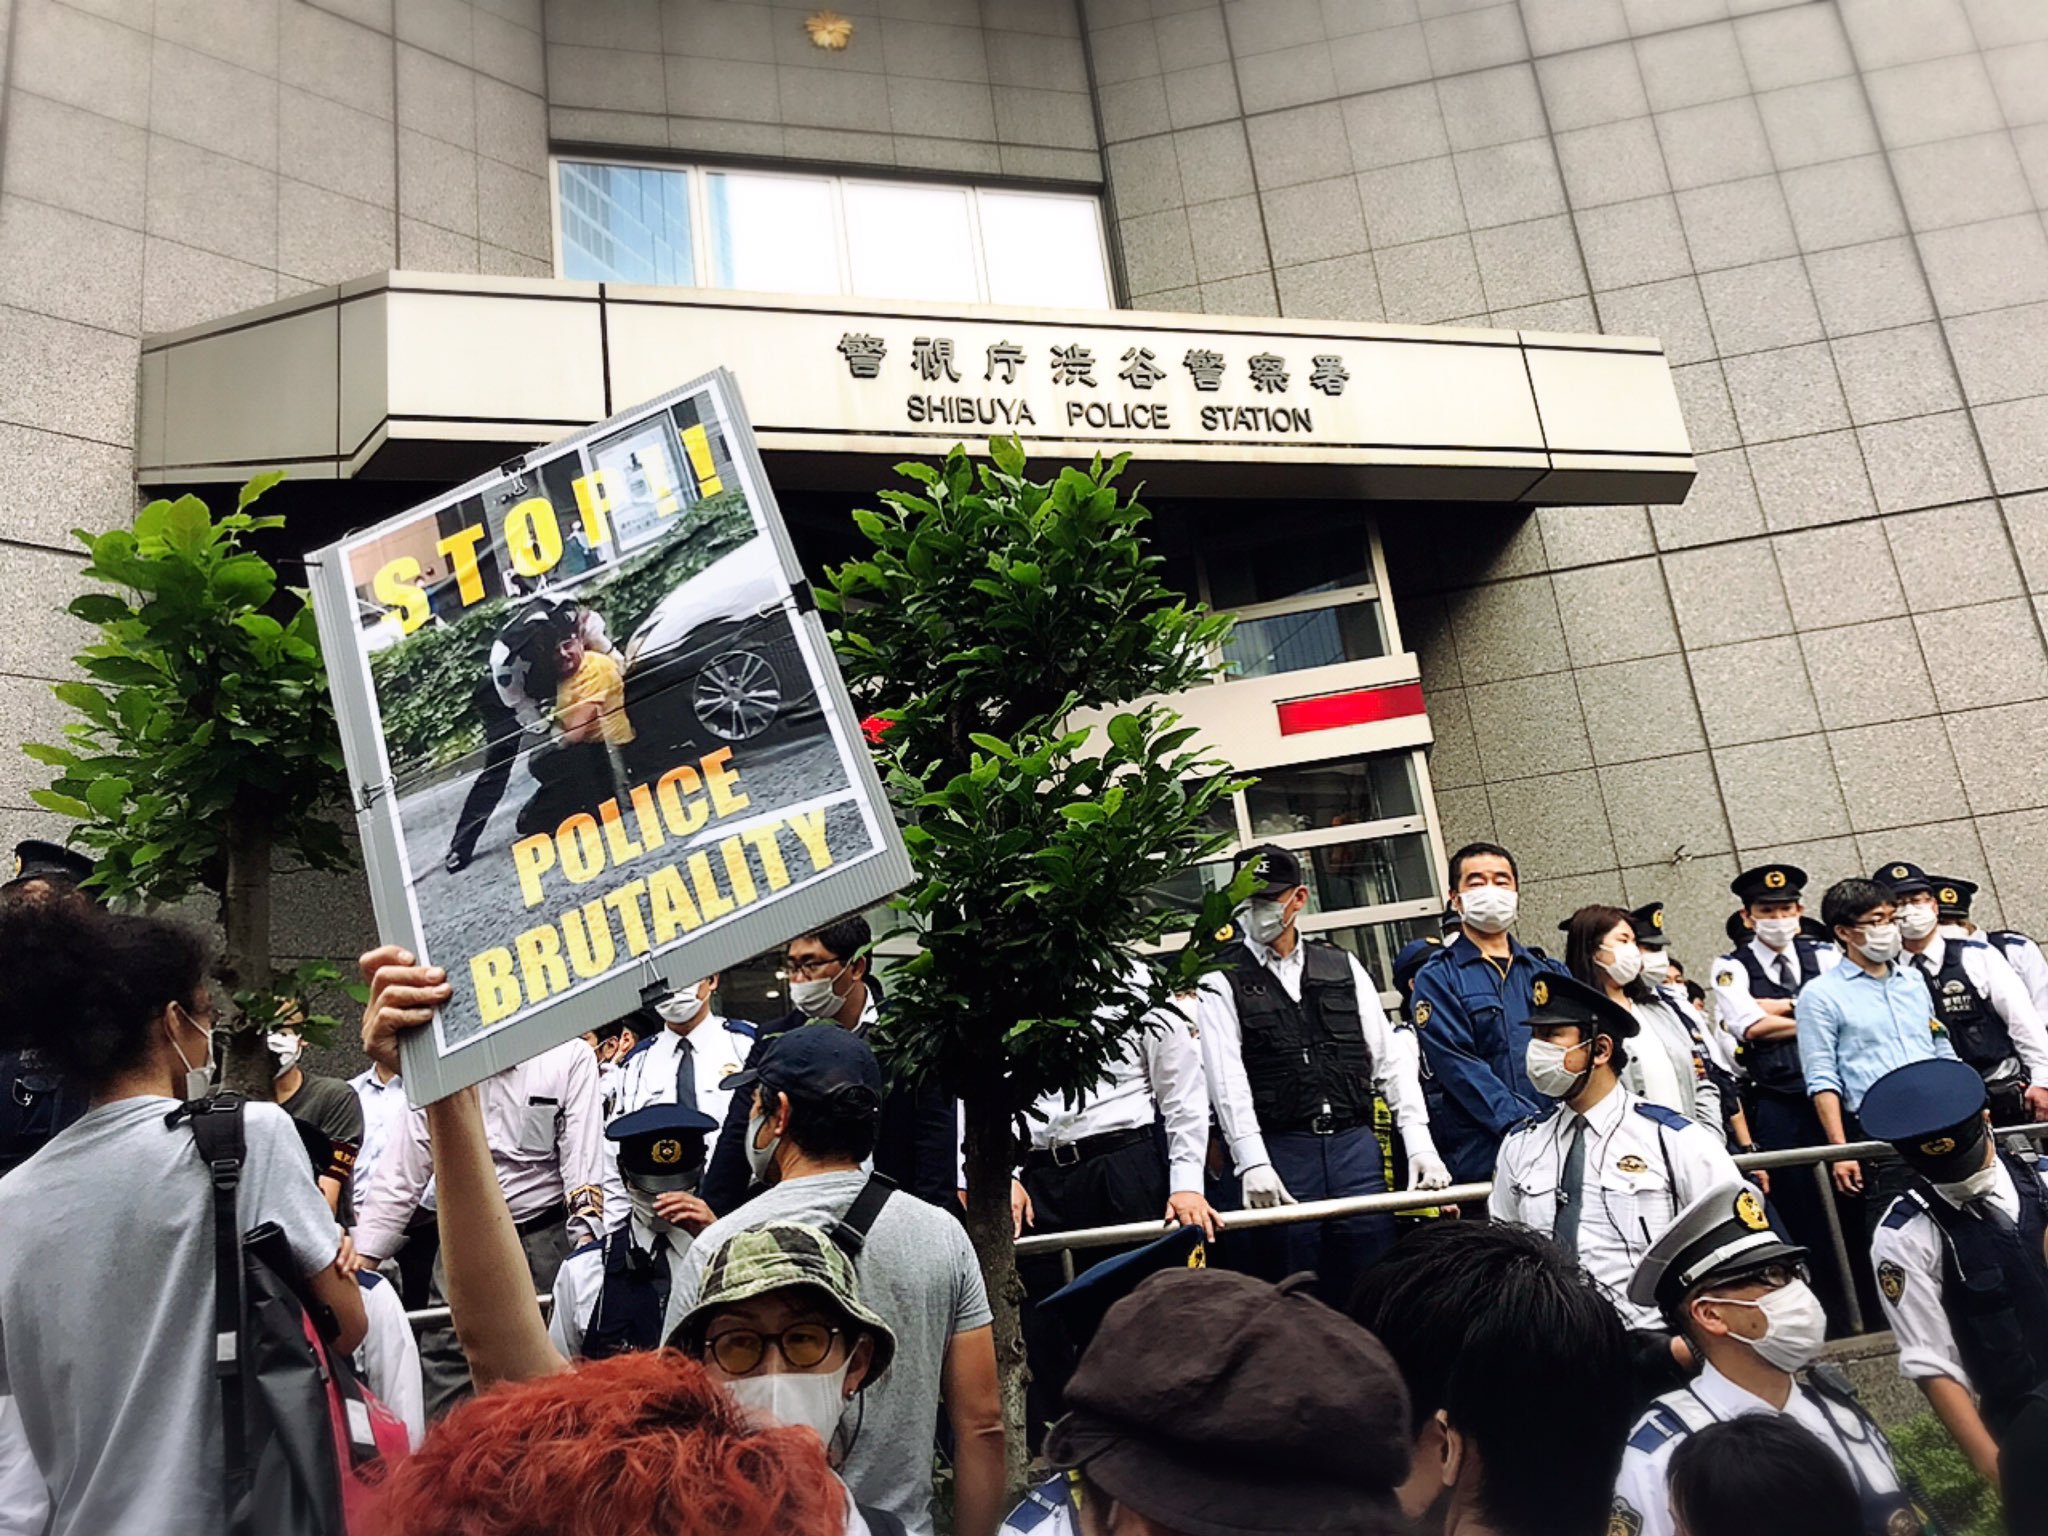 クルド人と外国人 日本人が 警察の残虐な行為 に抗議 Arab News